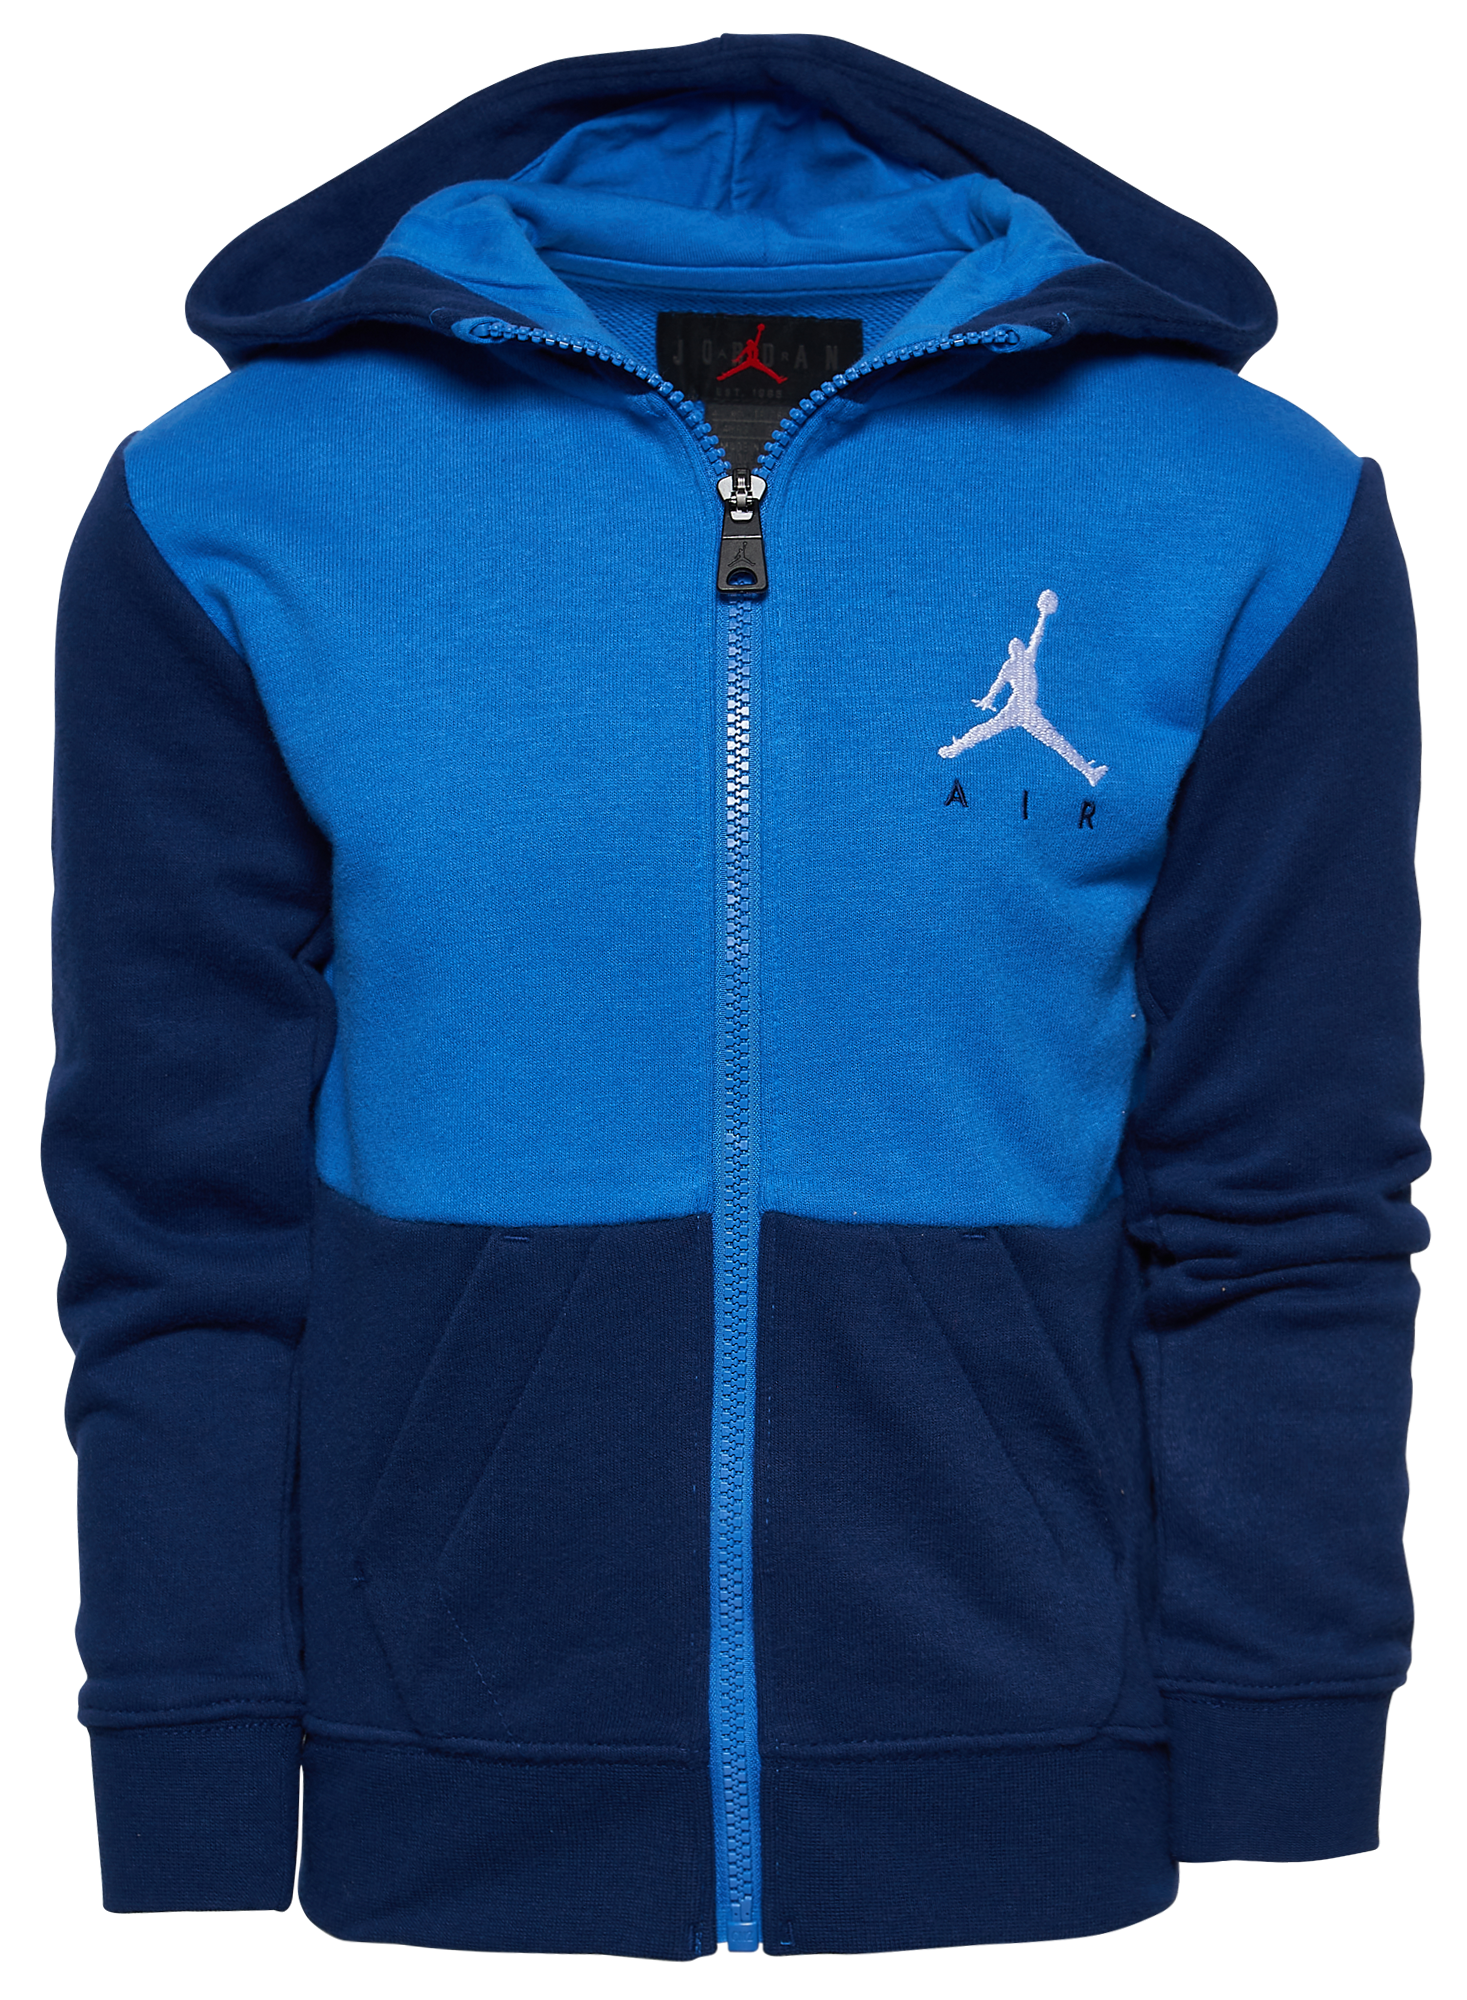 black and blue jordan hoodie